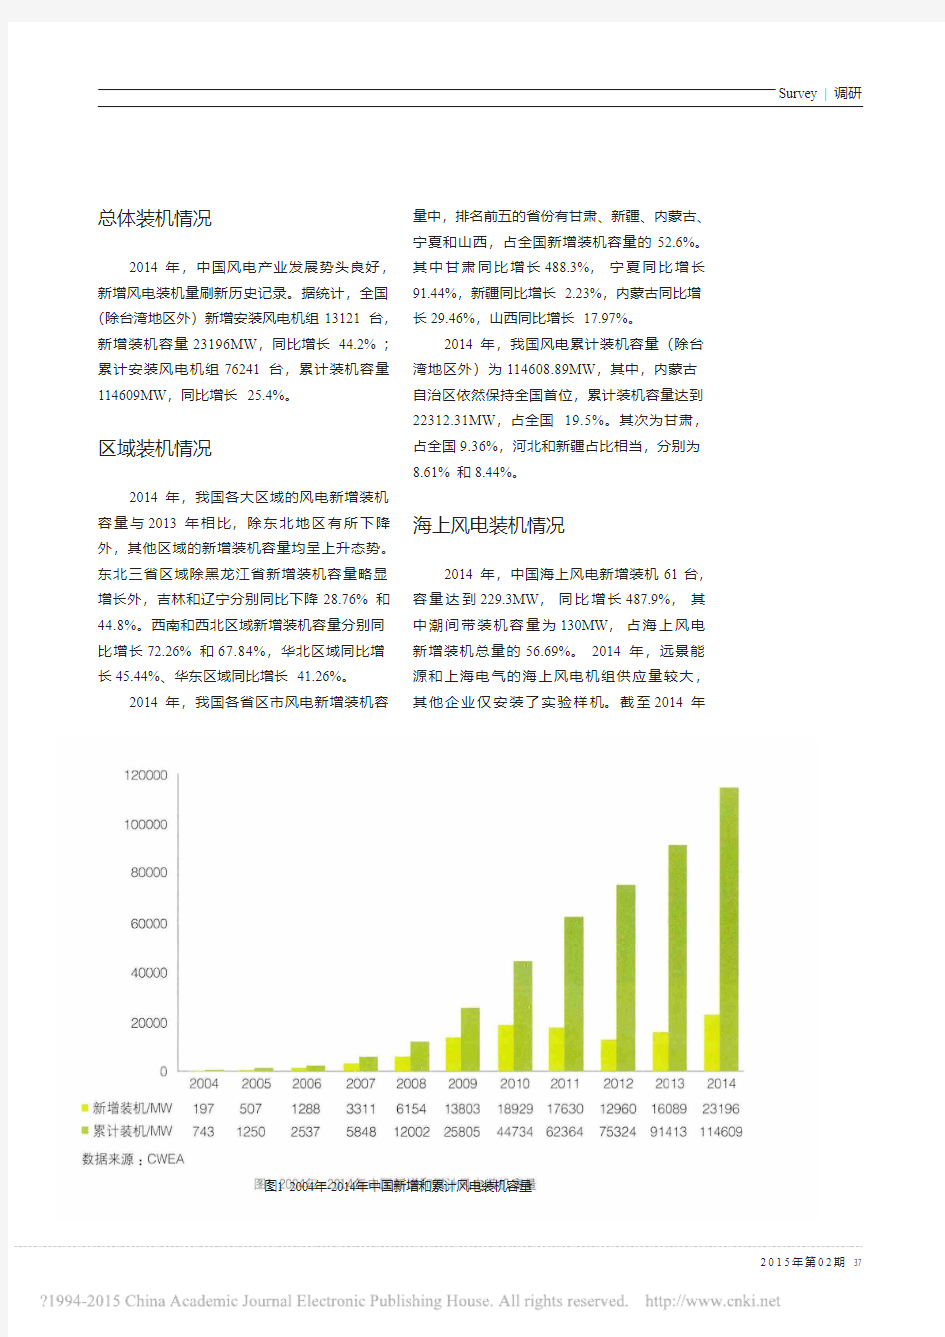 2014年中国风电装机容量统计